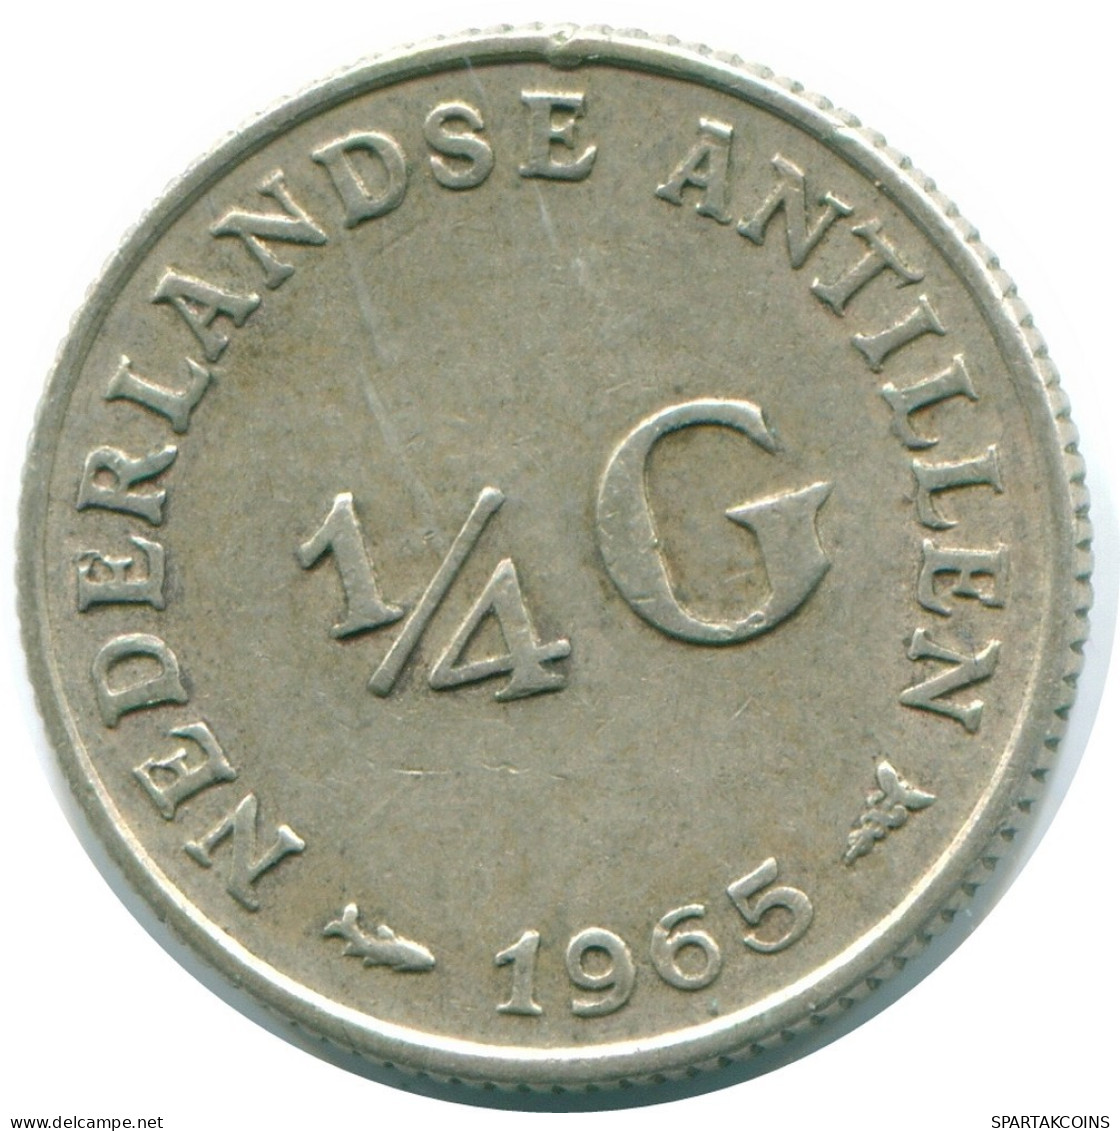 1/4 GULDEN 1965 NIEDERLÄNDISCHE ANTILLEN SILBER Koloniale Münze #NL11281.4.D.A - Nederlandse Antillen